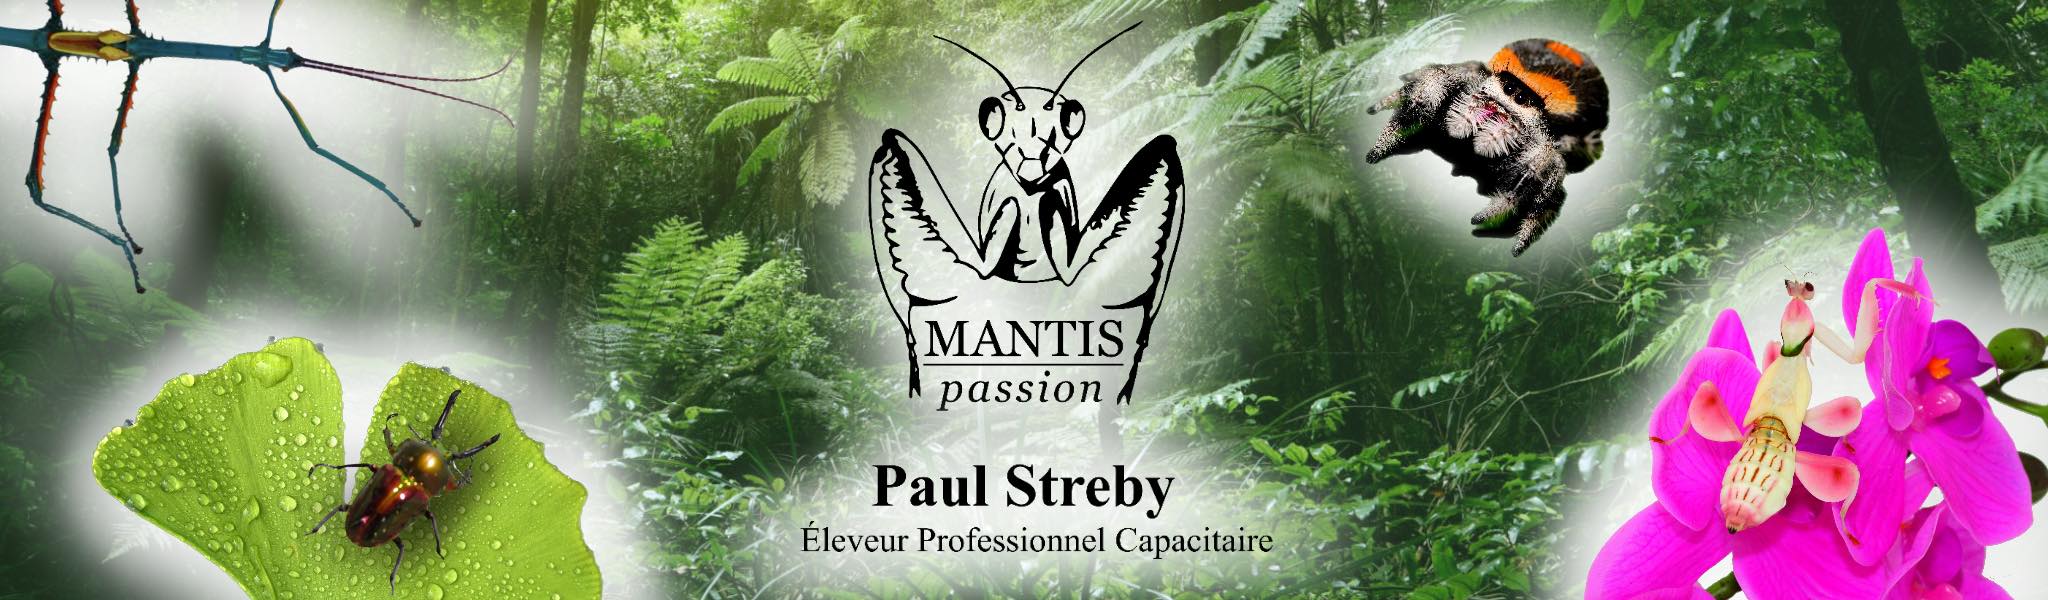 Mantis Passion site web